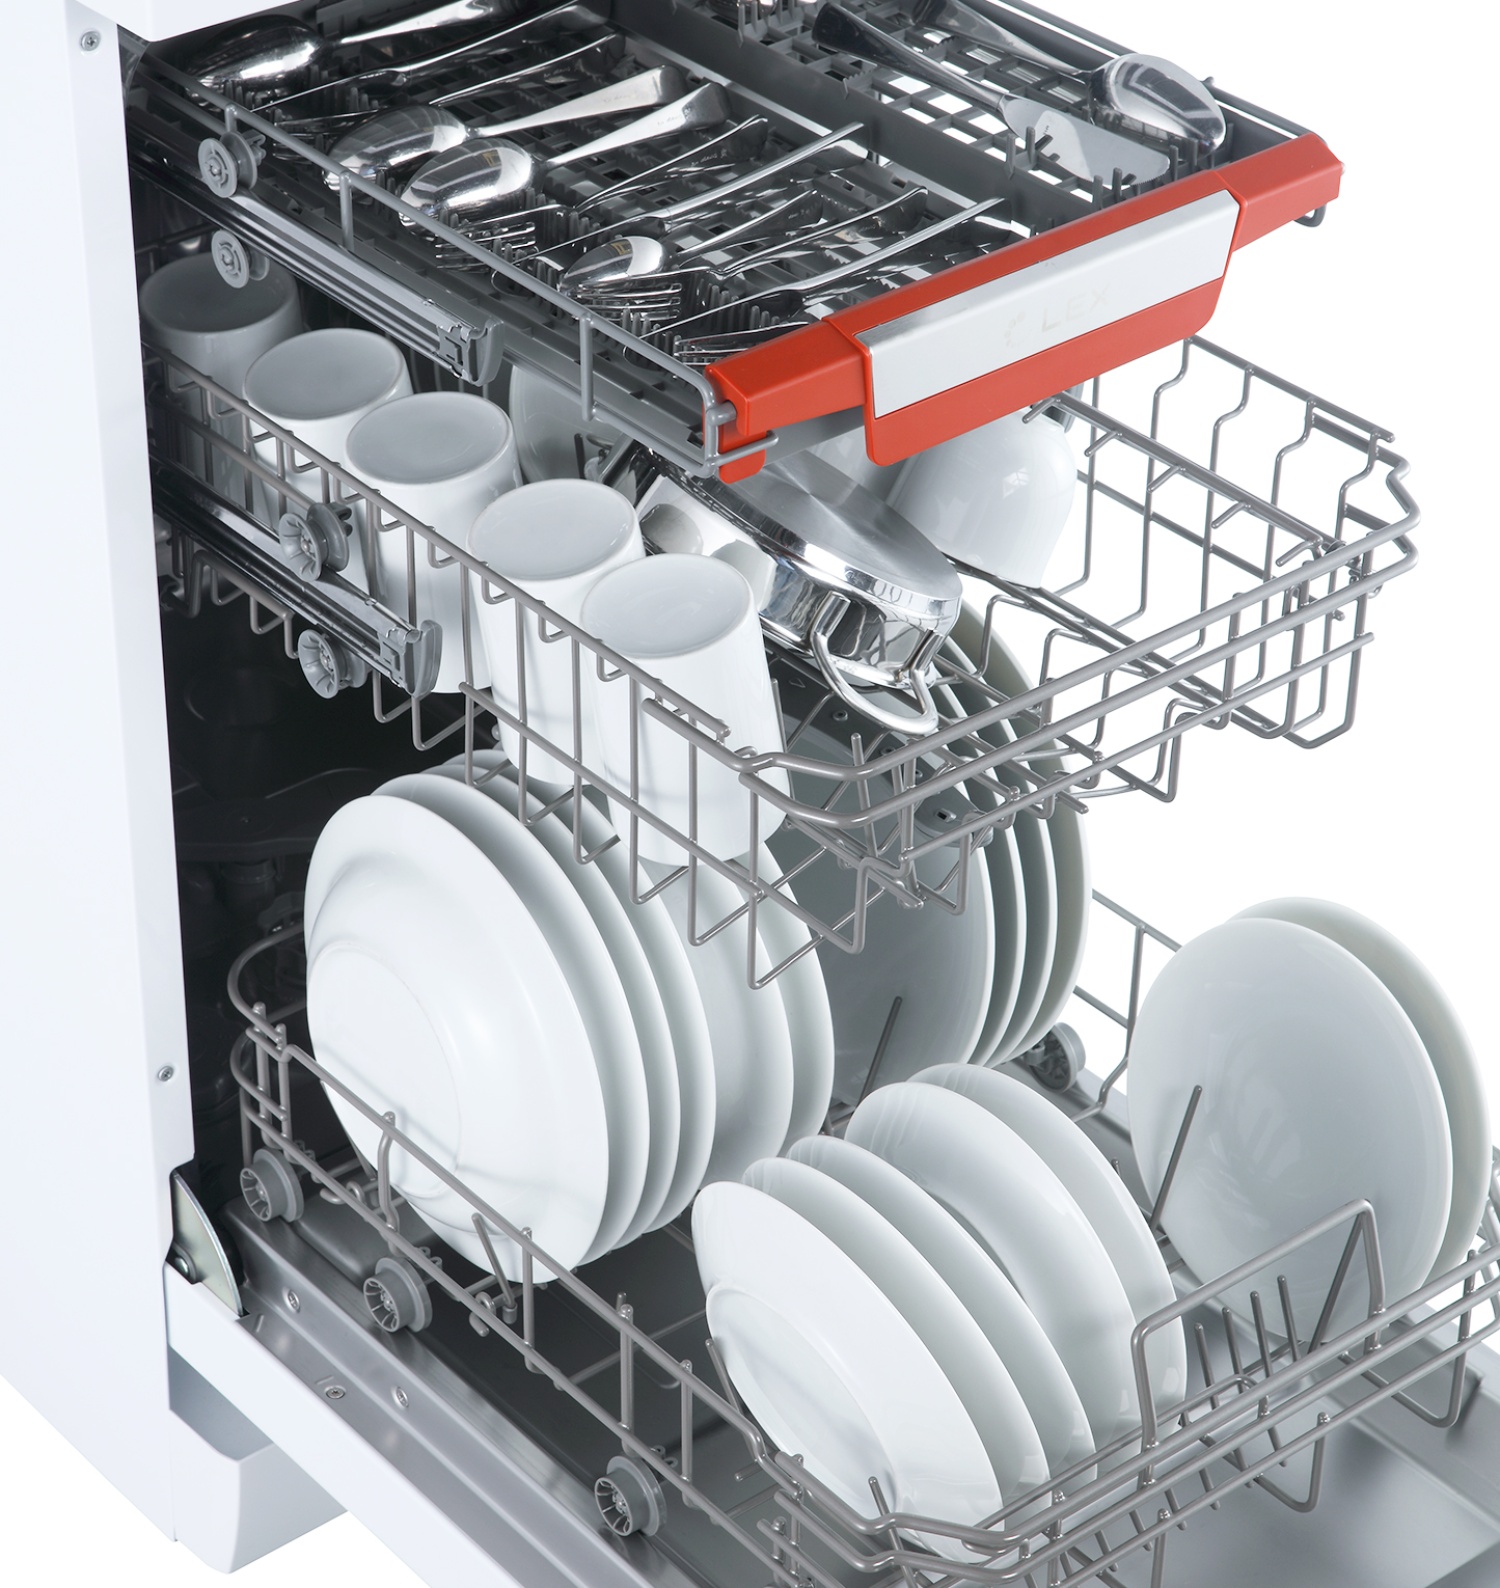 Отдельностоящая посудомоечная машина LEX DW 4573 WH